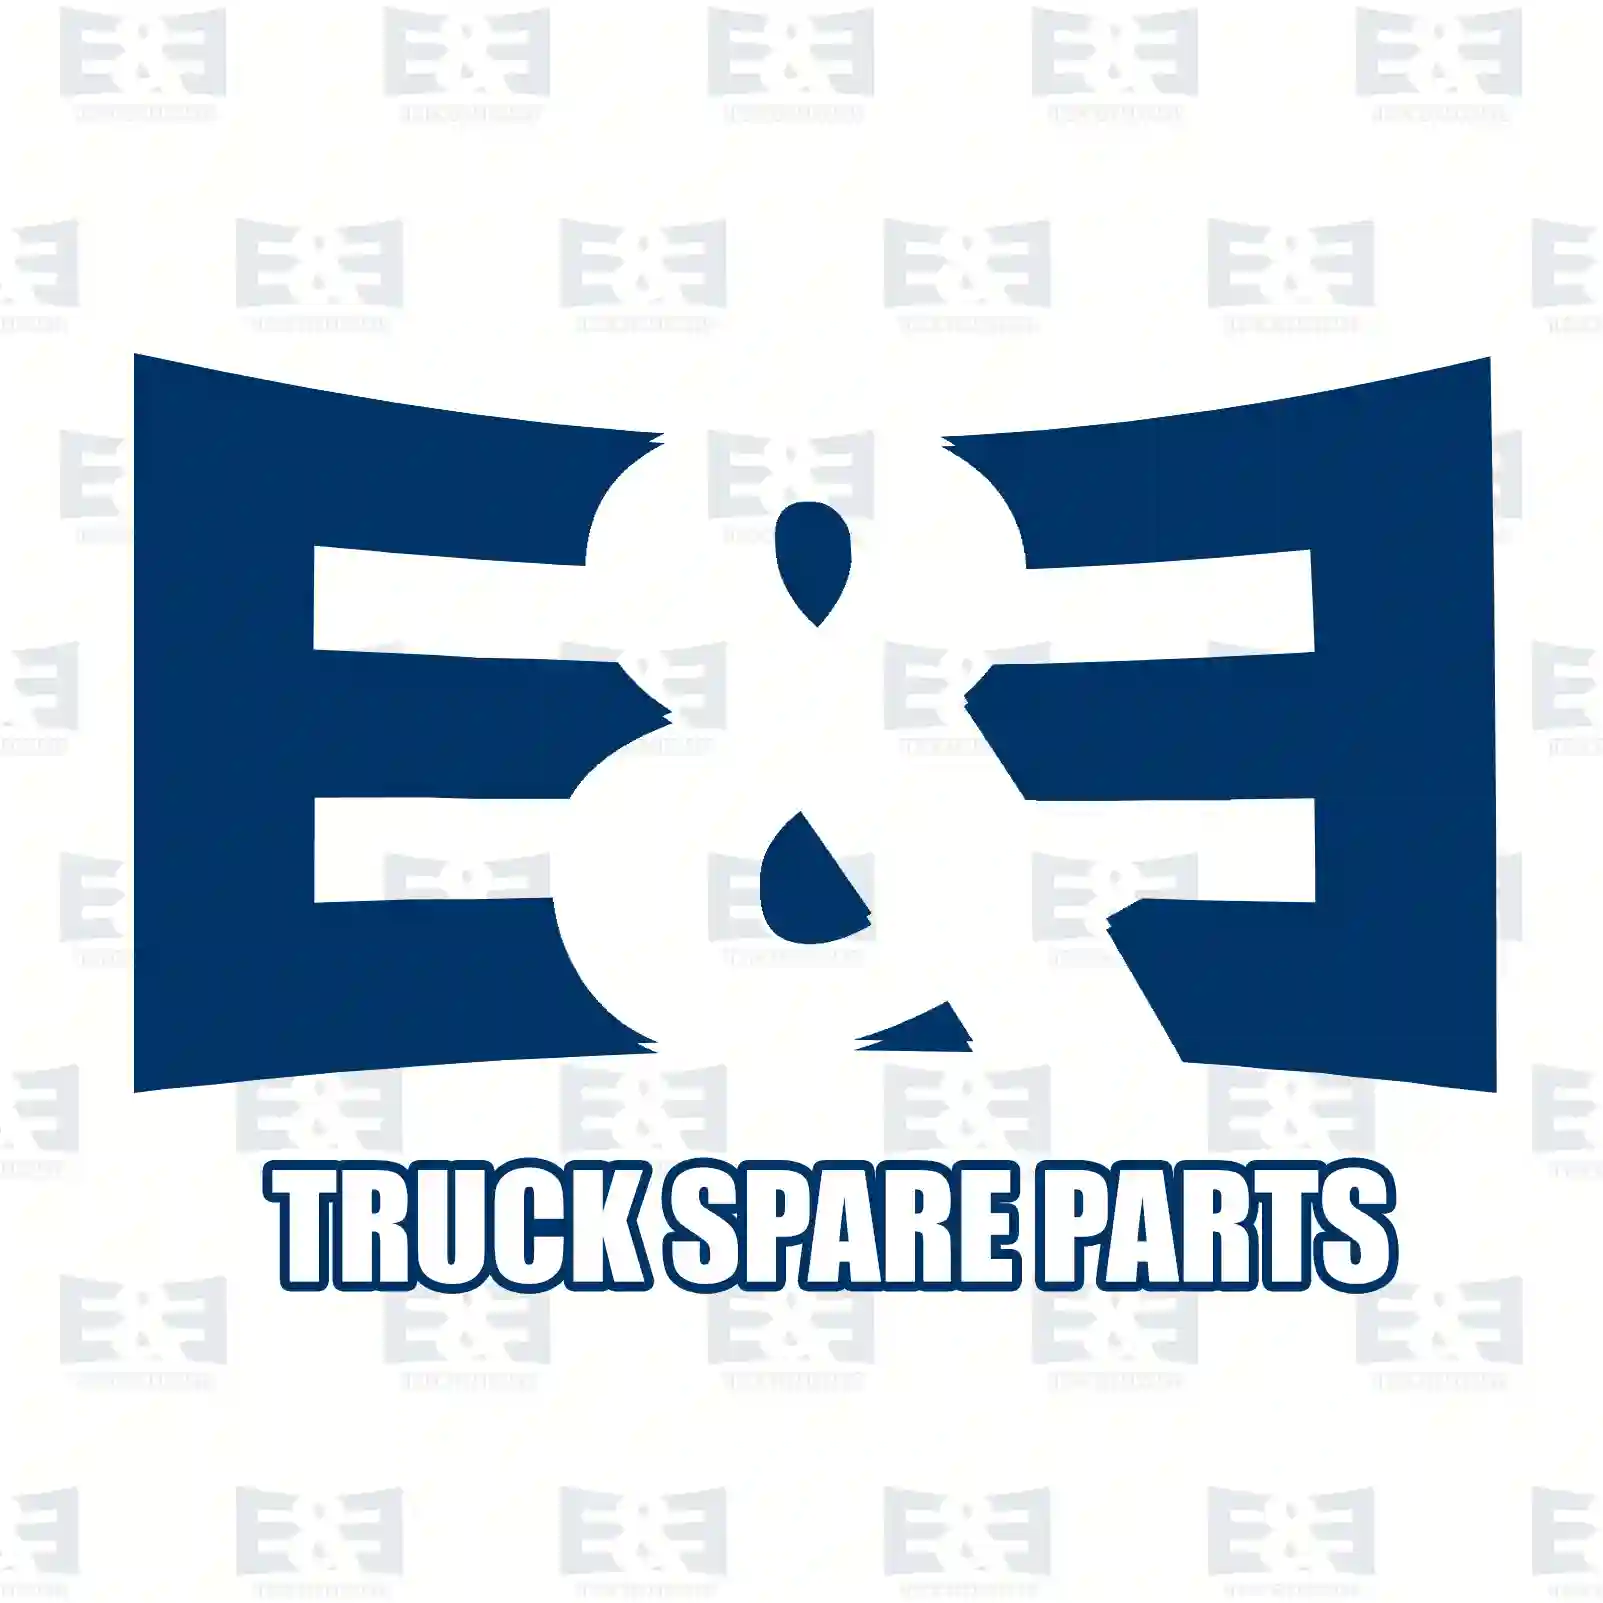 Lock washer, 2E2278844, 7420774242, 20774 ||  2E2278844 E&E Truck Spare Parts | Truck Spare Parts, Auotomotive Spare Parts Lock washer, 2E2278844, 7420774242, 20774 ||  2E2278844 E&E Truck Spare Parts | Truck Spare Parts, Auotomotive Spare Parts